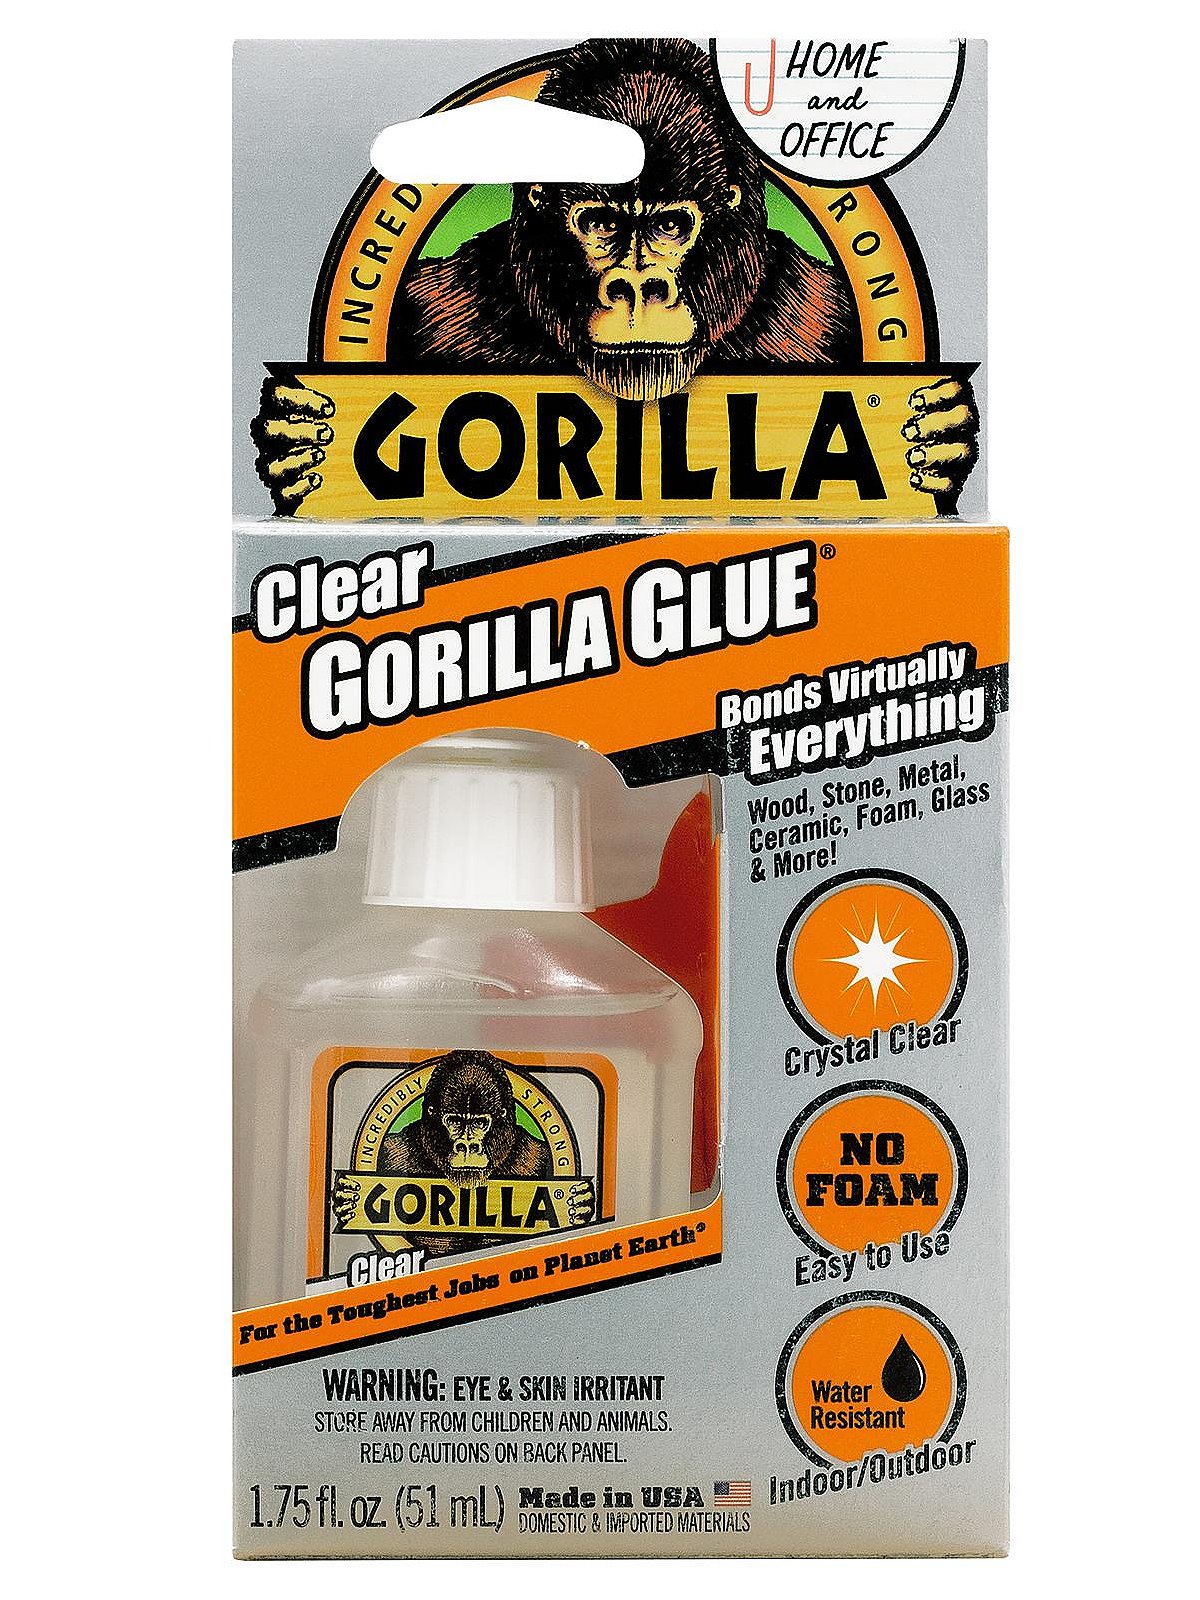 THE GORILLA GLUE COMPANY Fabric Glue